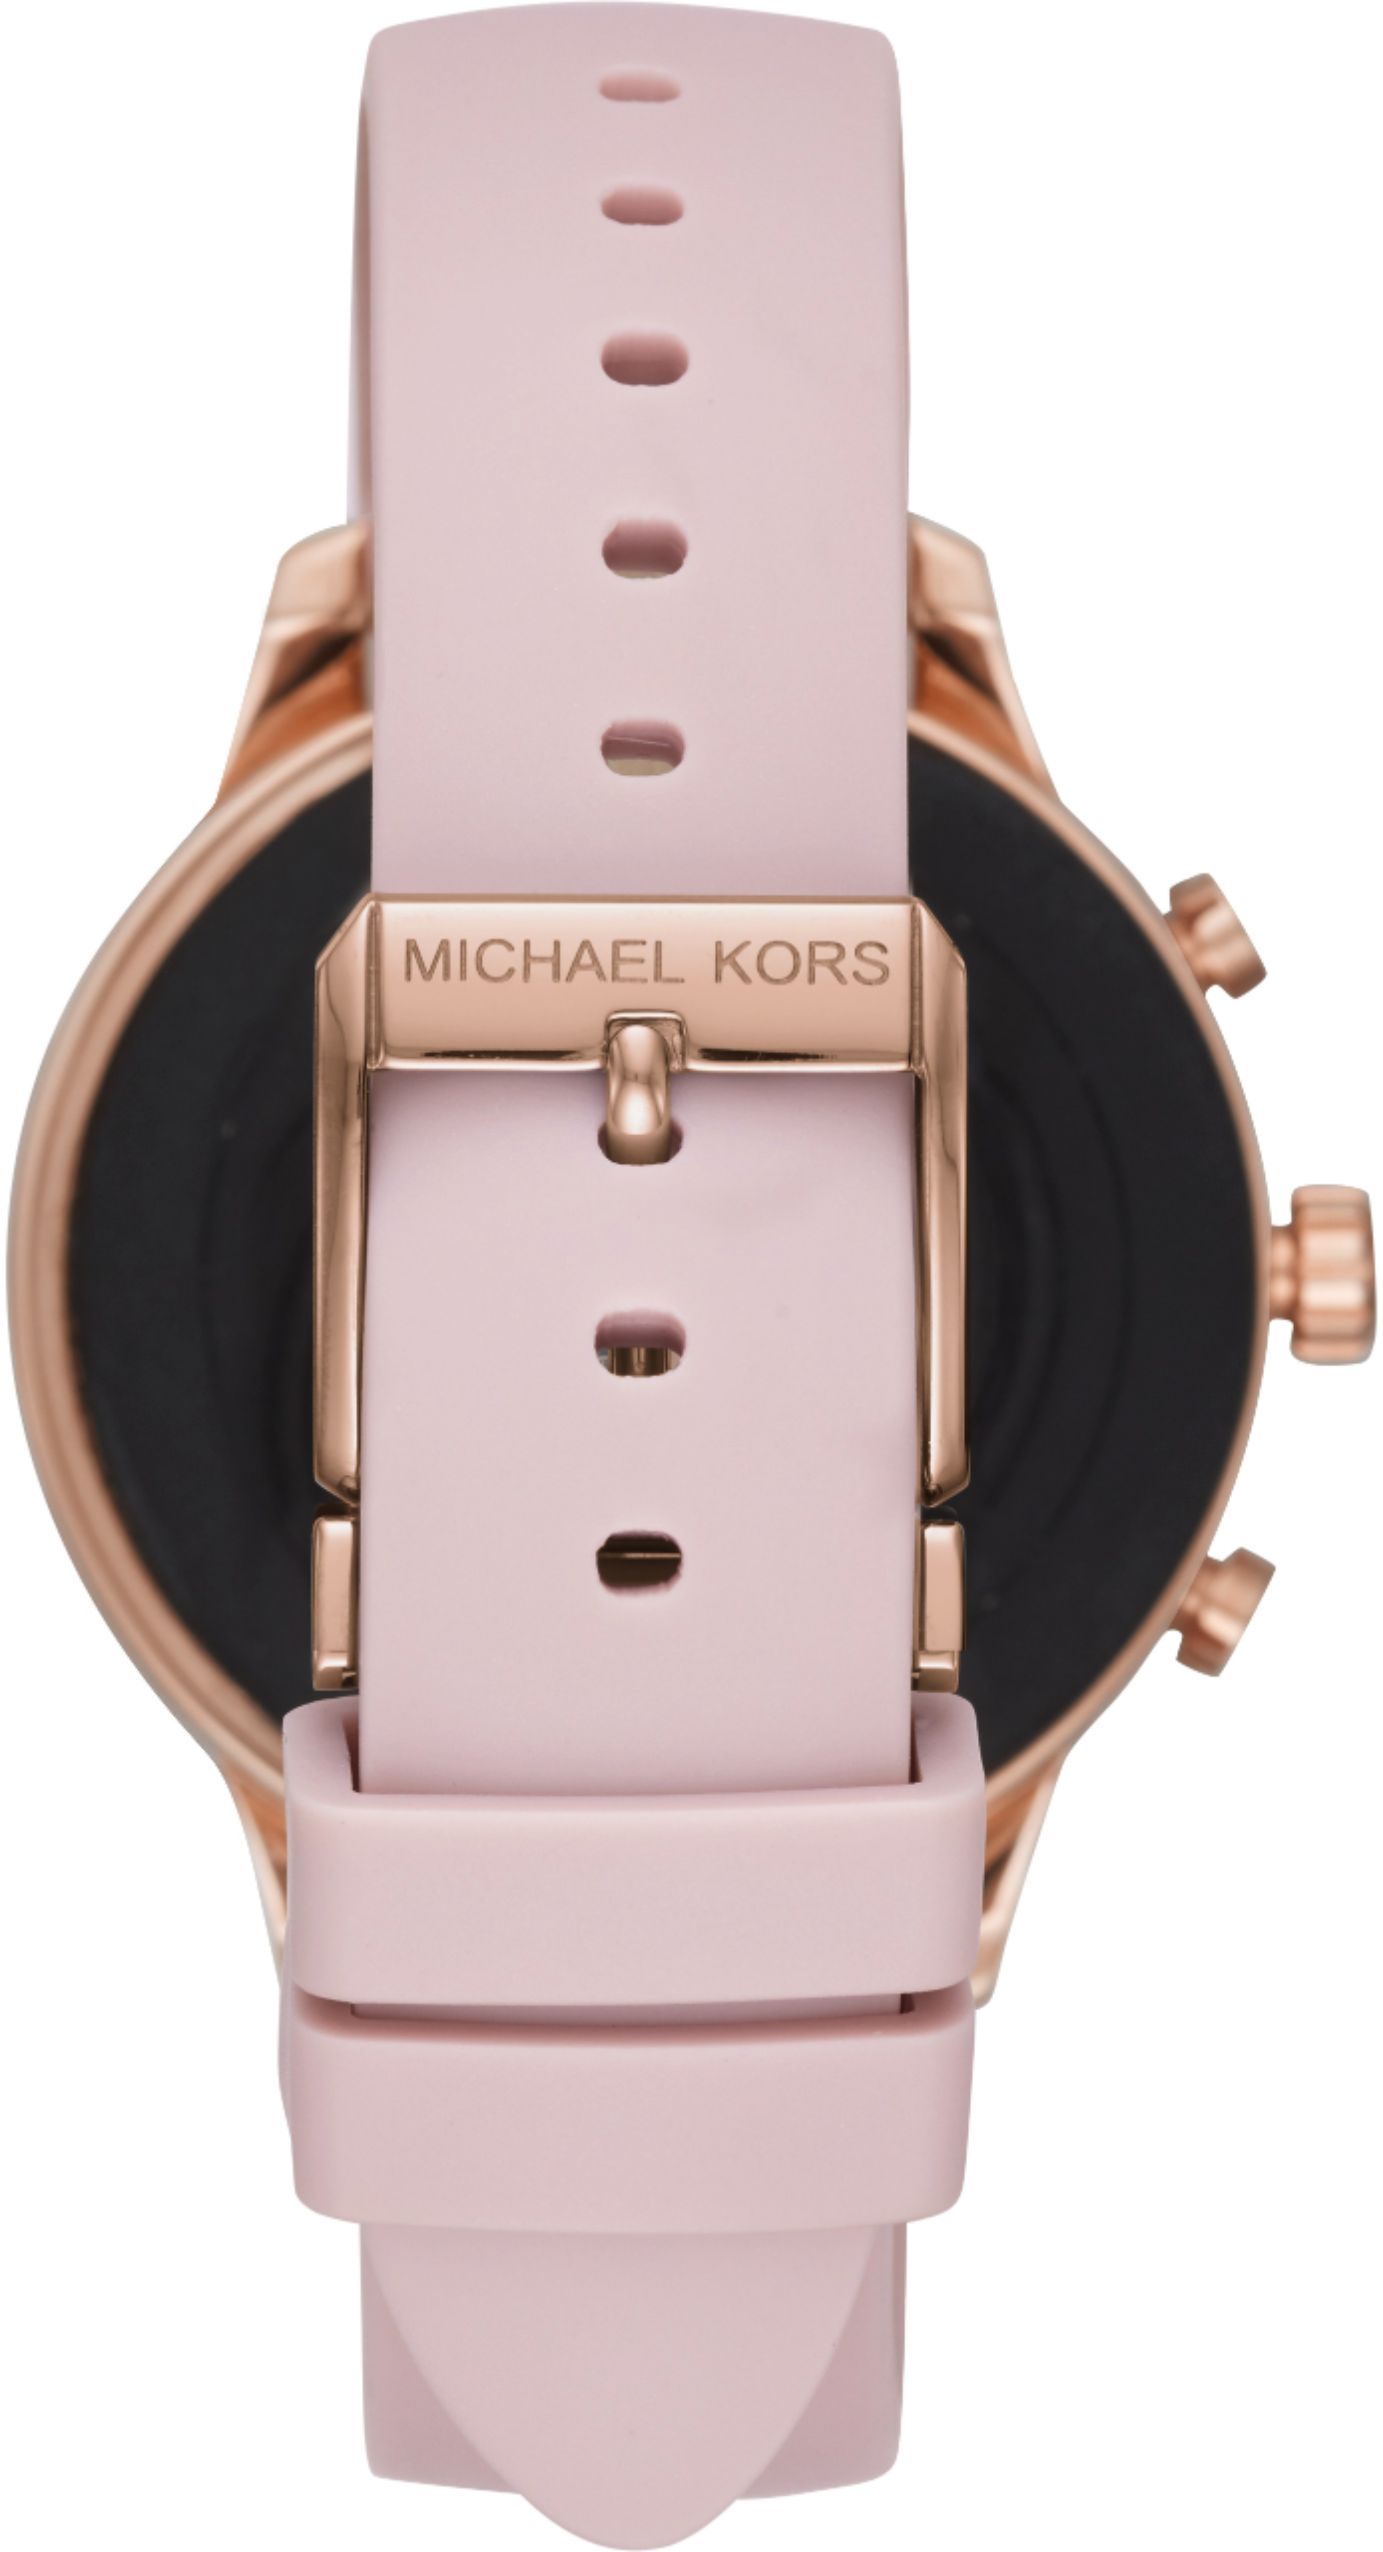 michael kors runway pink smartwatch